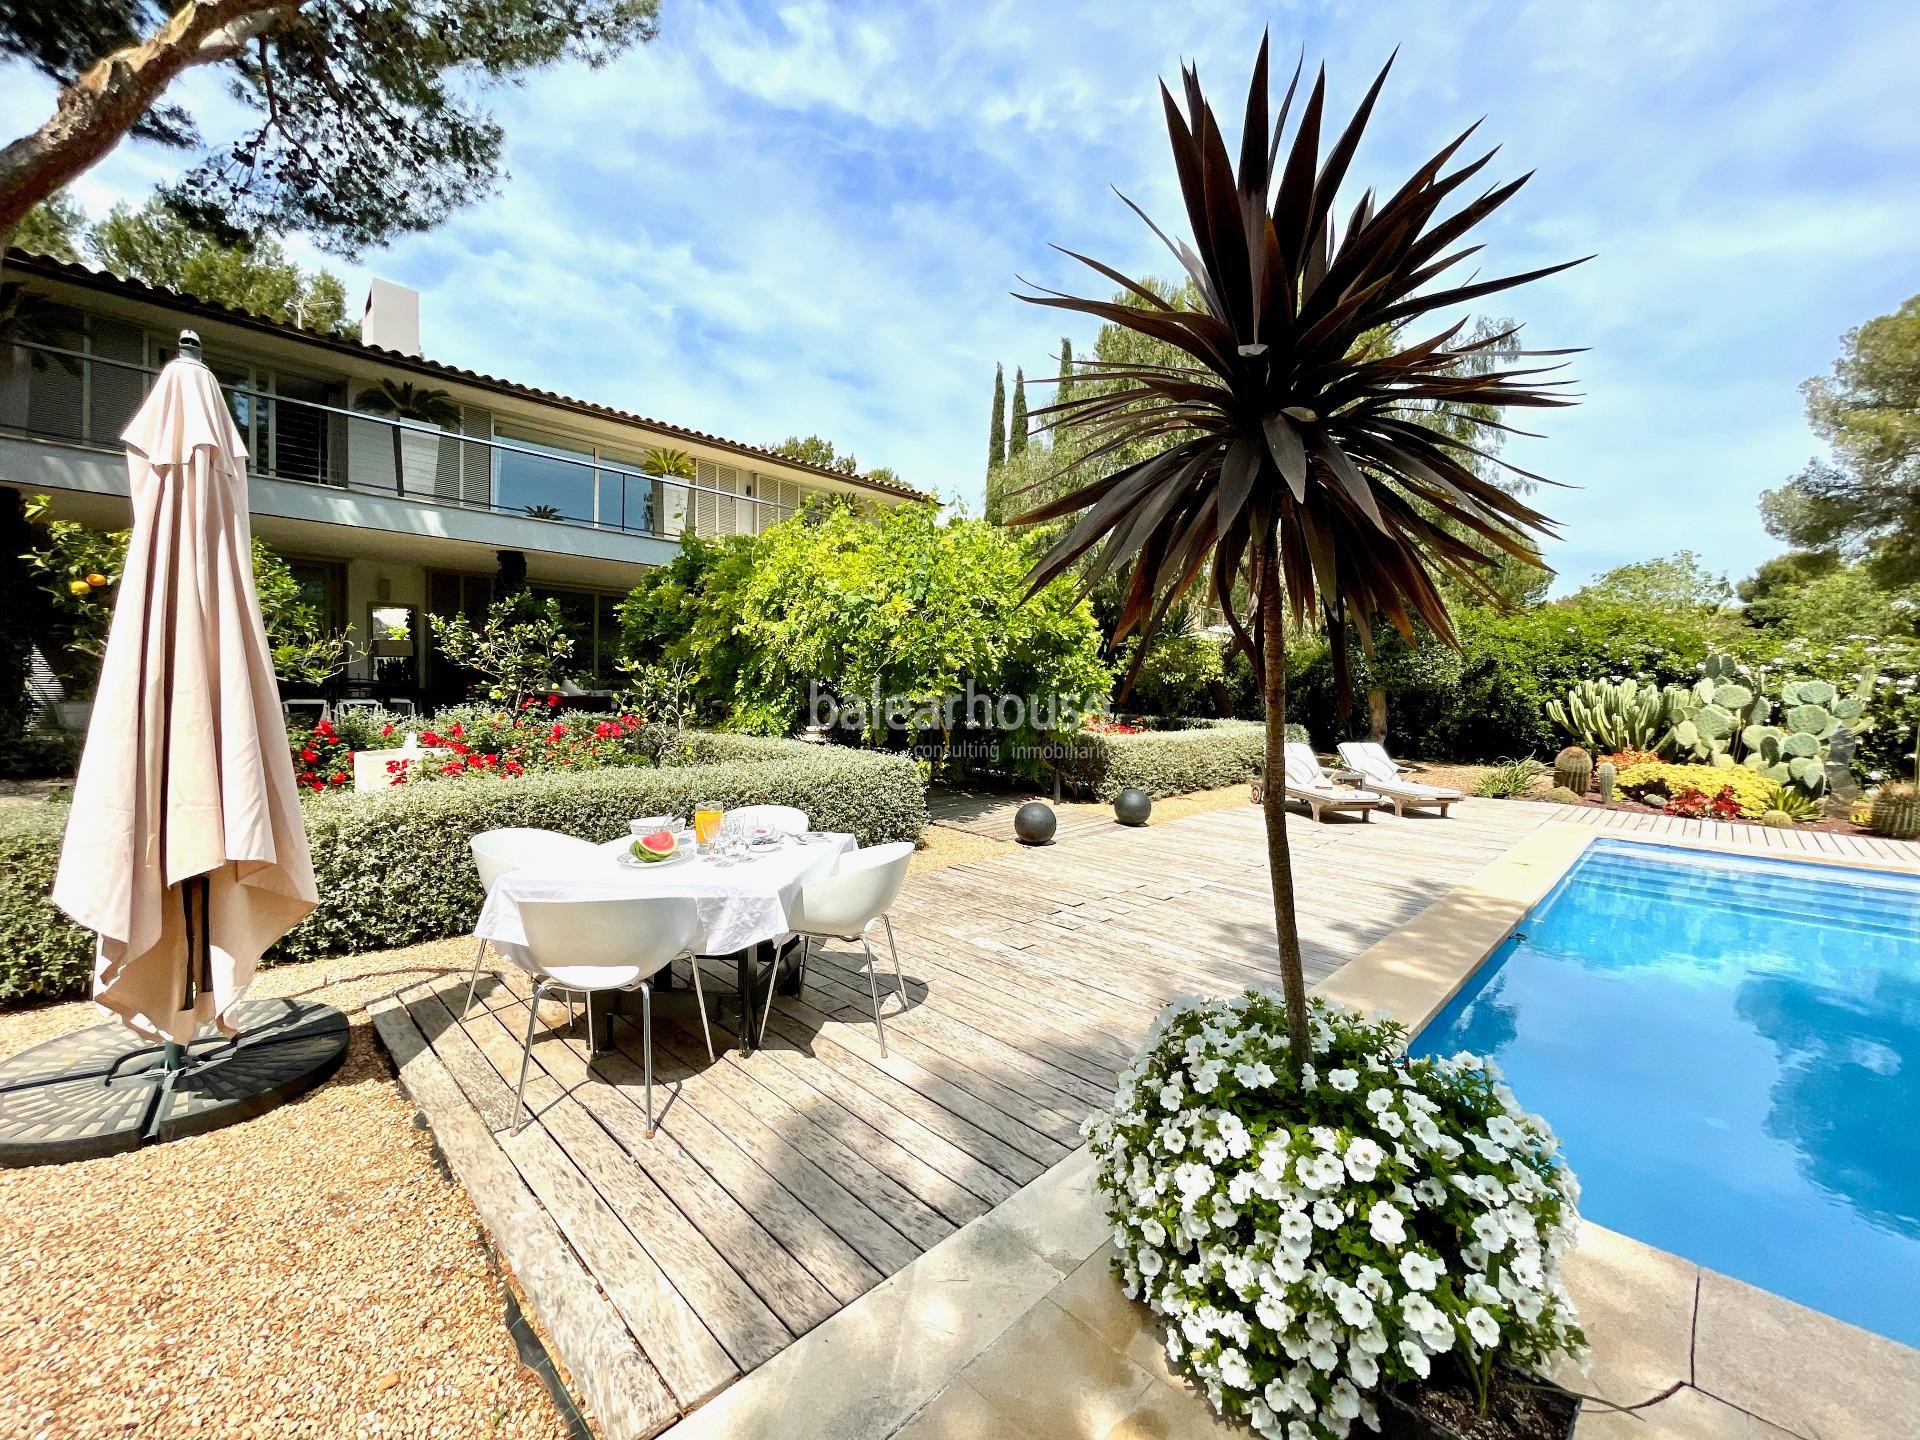 Preciosa villa junto a bonitas calas en Sol de Mallorca con piscina y fresca vegetación mediterránea